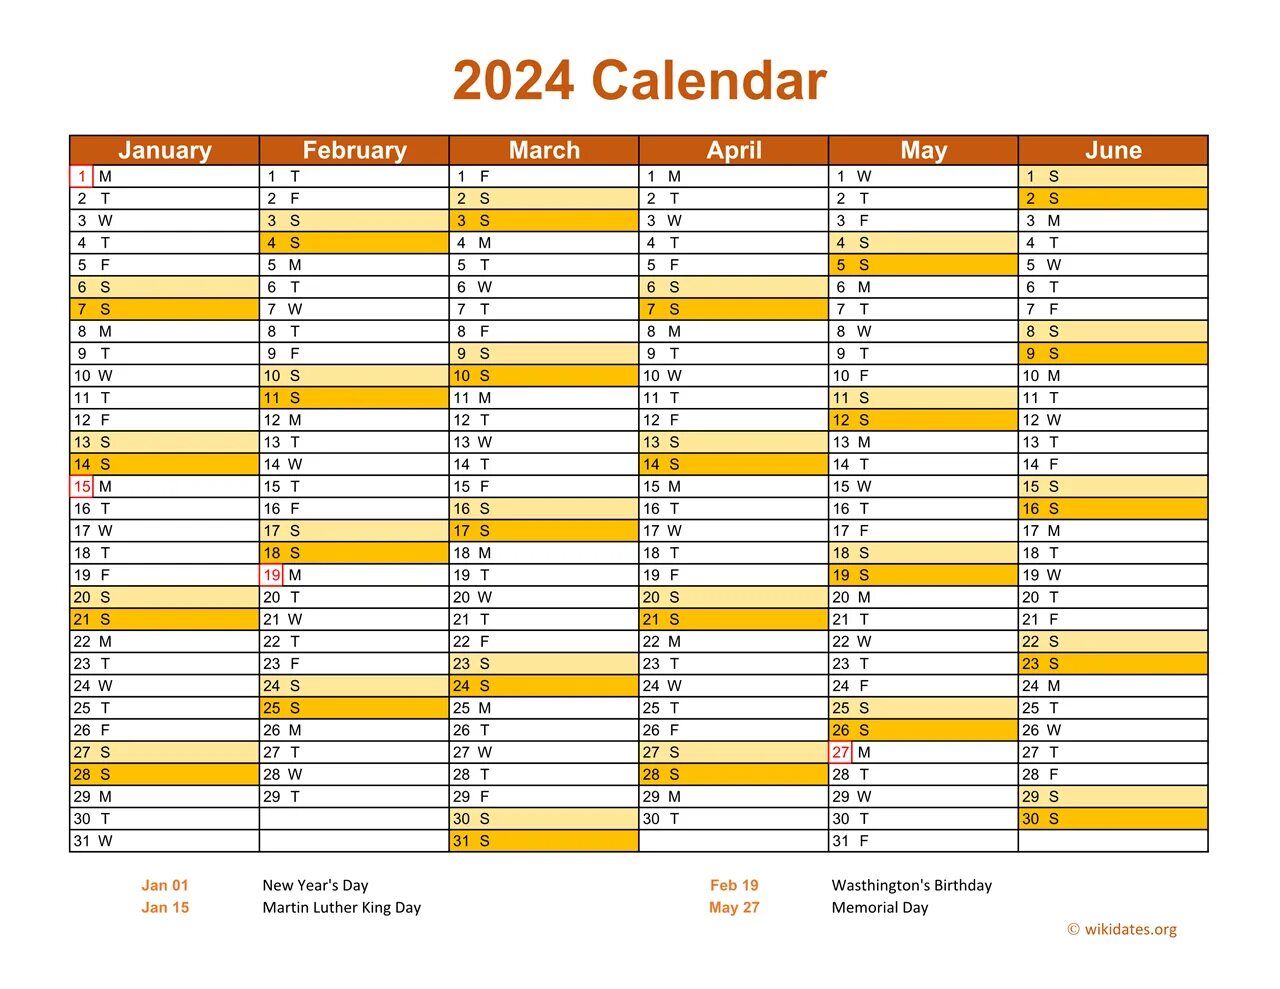 The year is 2024. Календарь 2050. Календарь 2031. Календарь 2036. Календарь 2028.